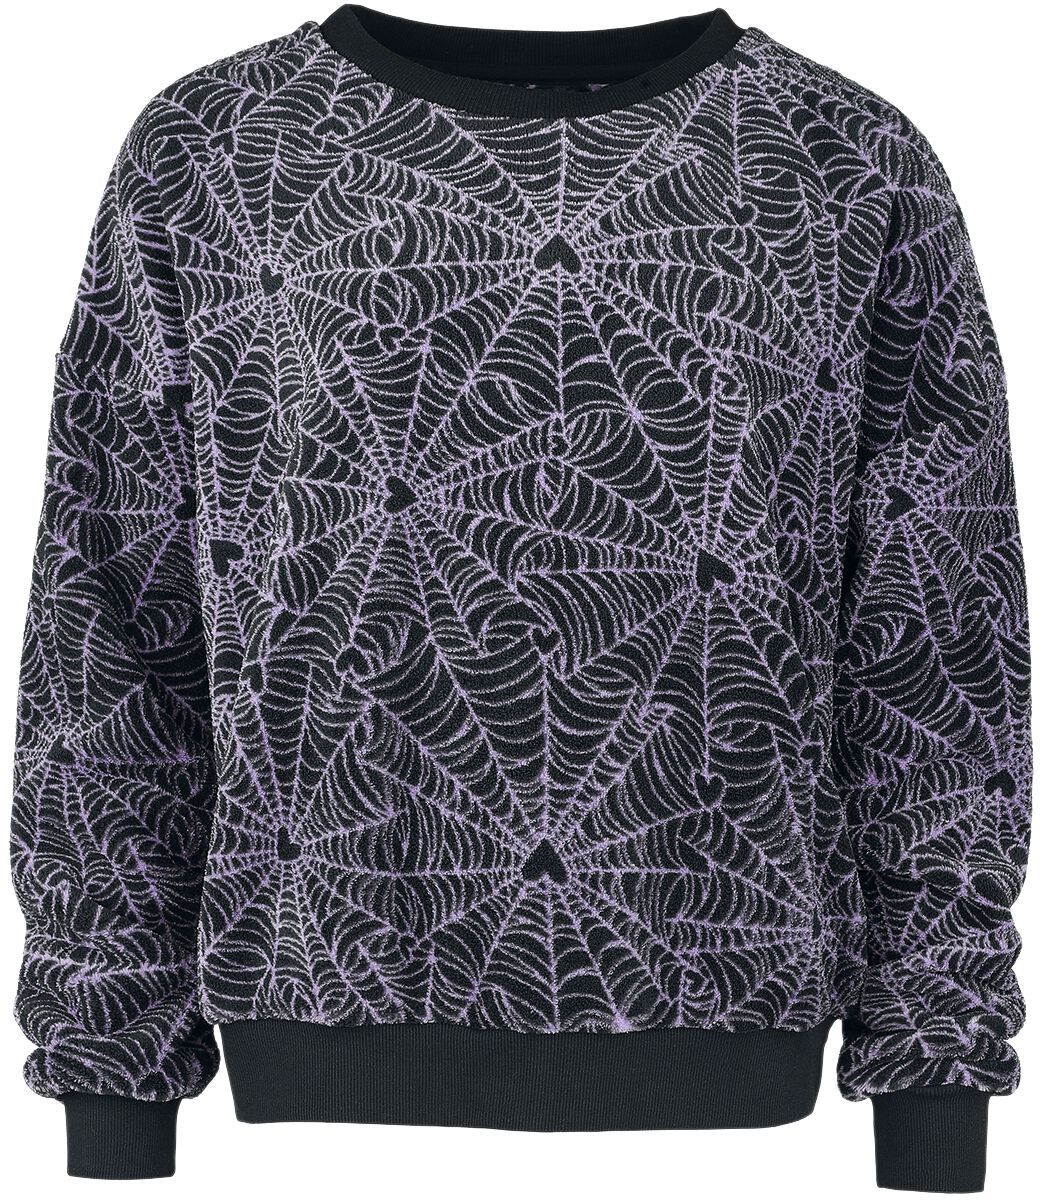 Full Volume by EMP Sweatshirt - Spider Web Sweatshirt - M bis XL - für Damen - Größe L - schwarz